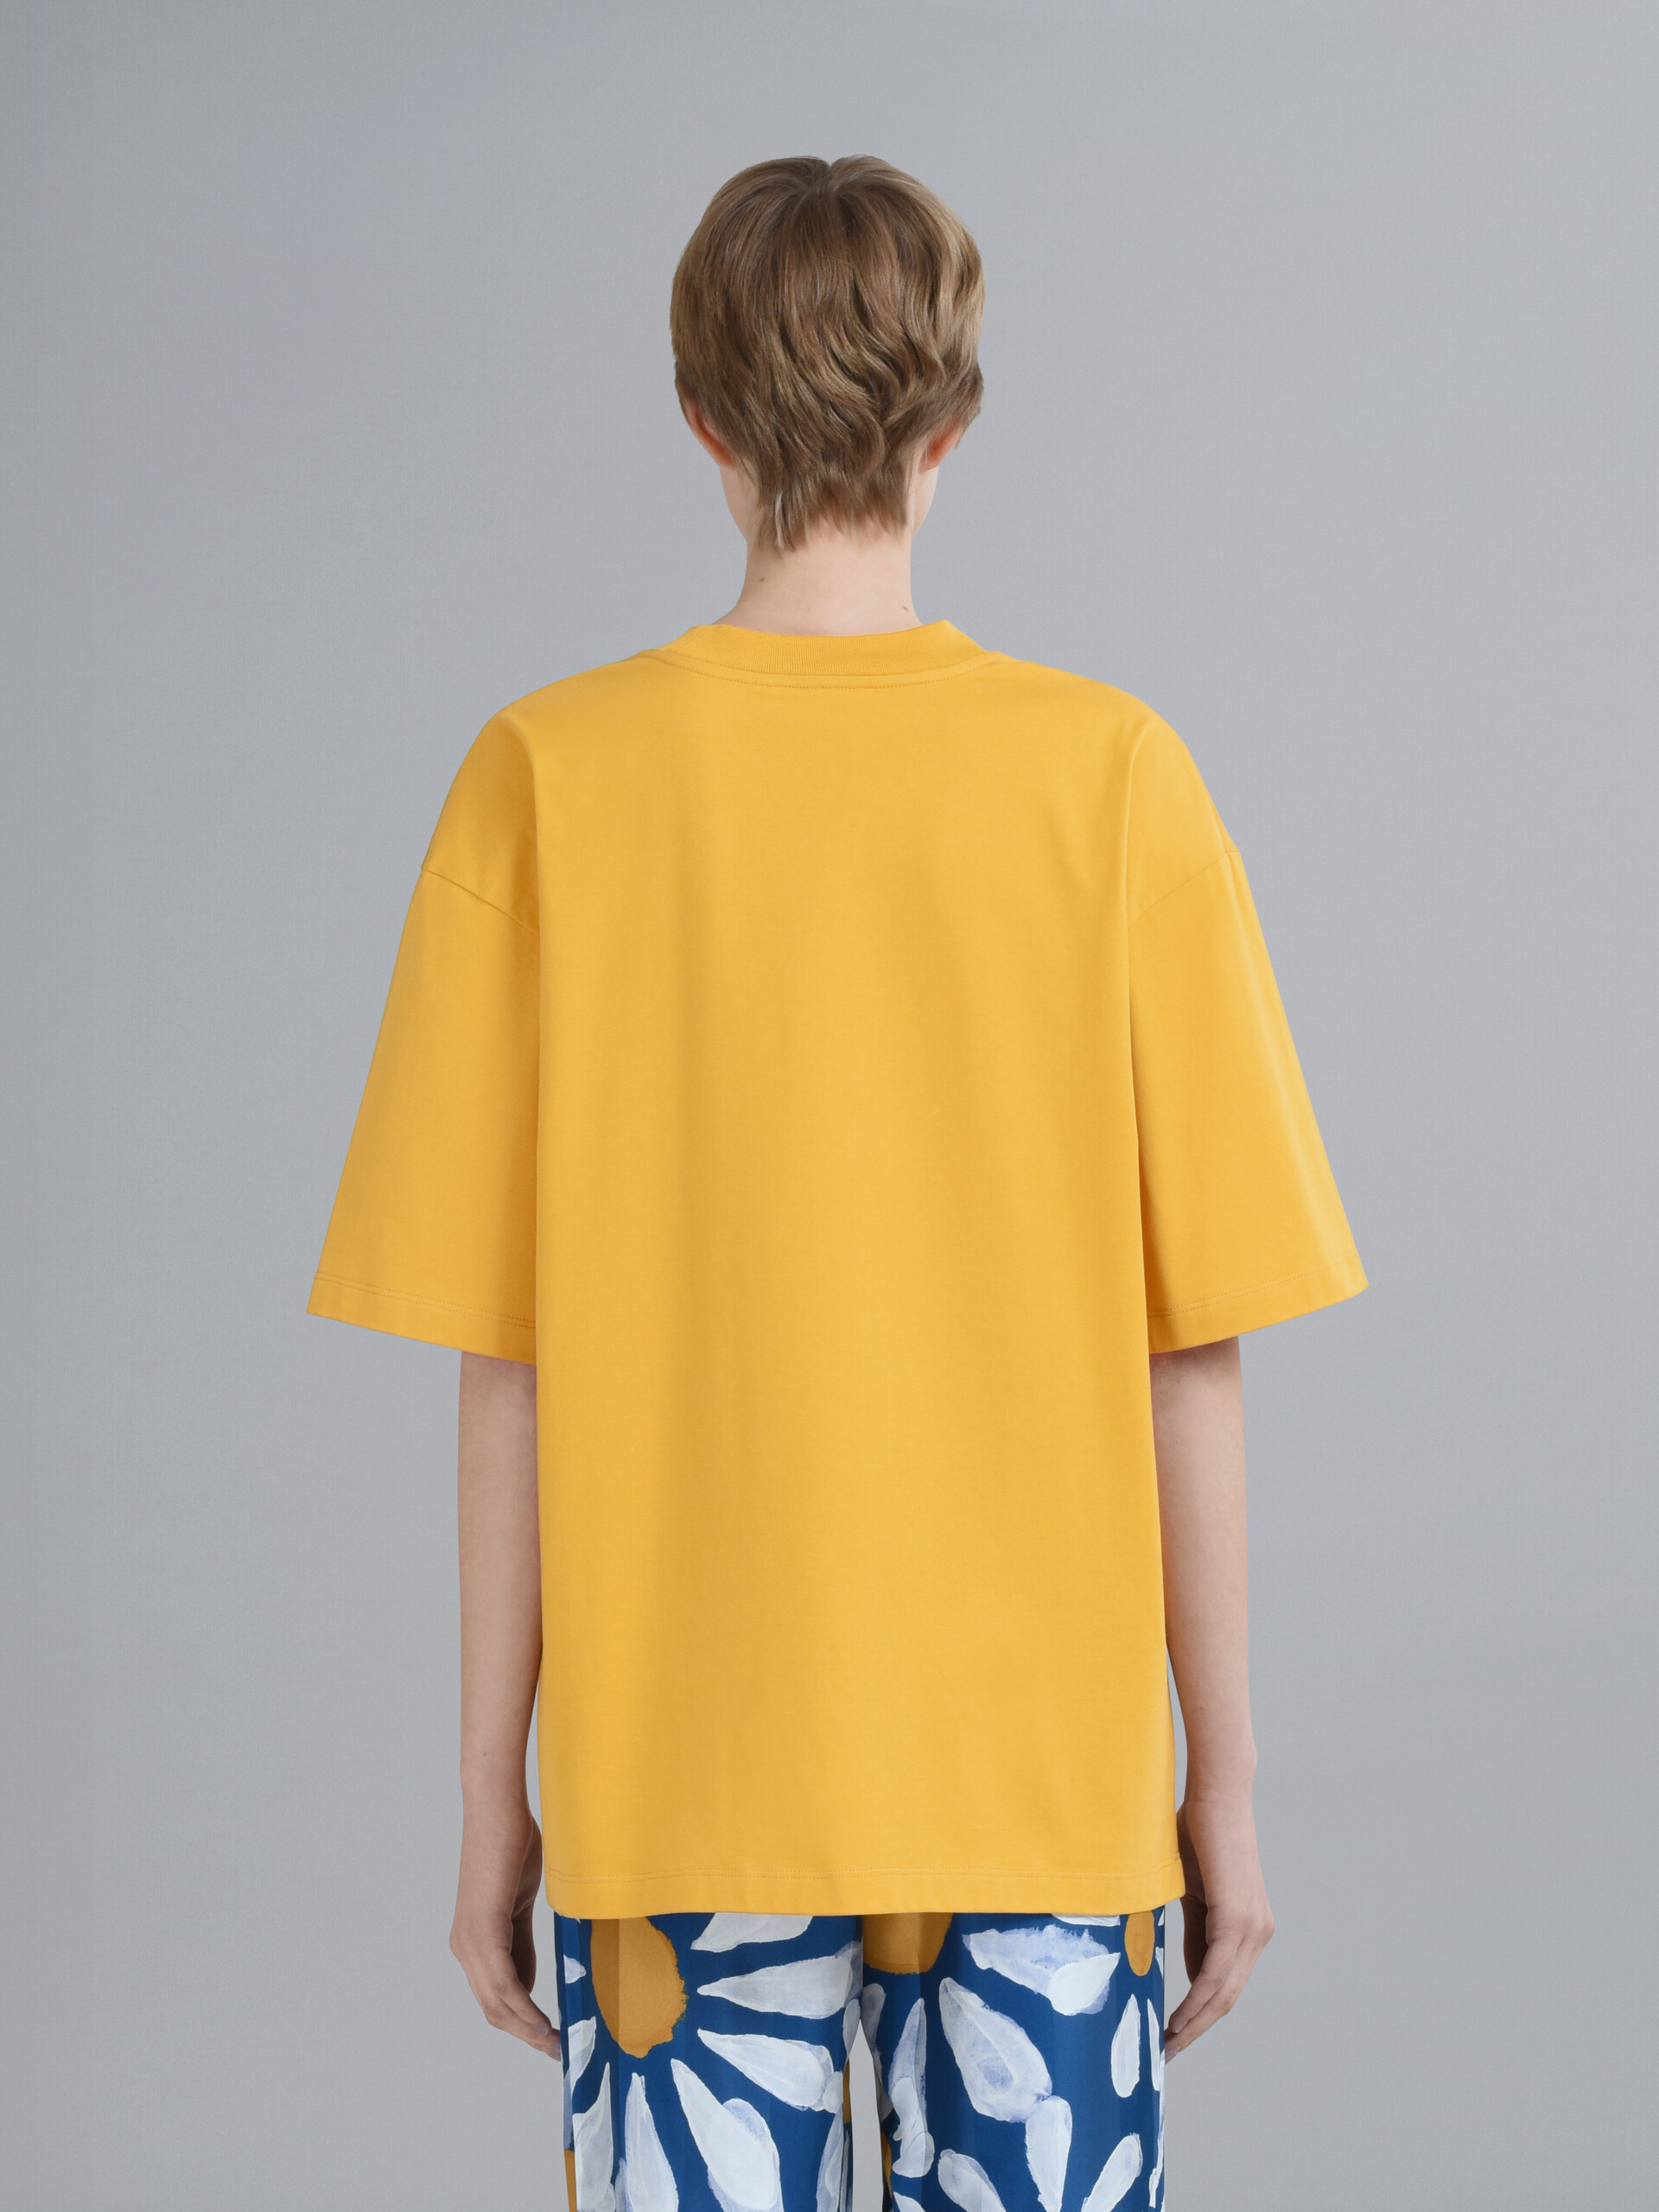 Daisy logo print yellow jersey T-shirt - T-shirts - Image 3